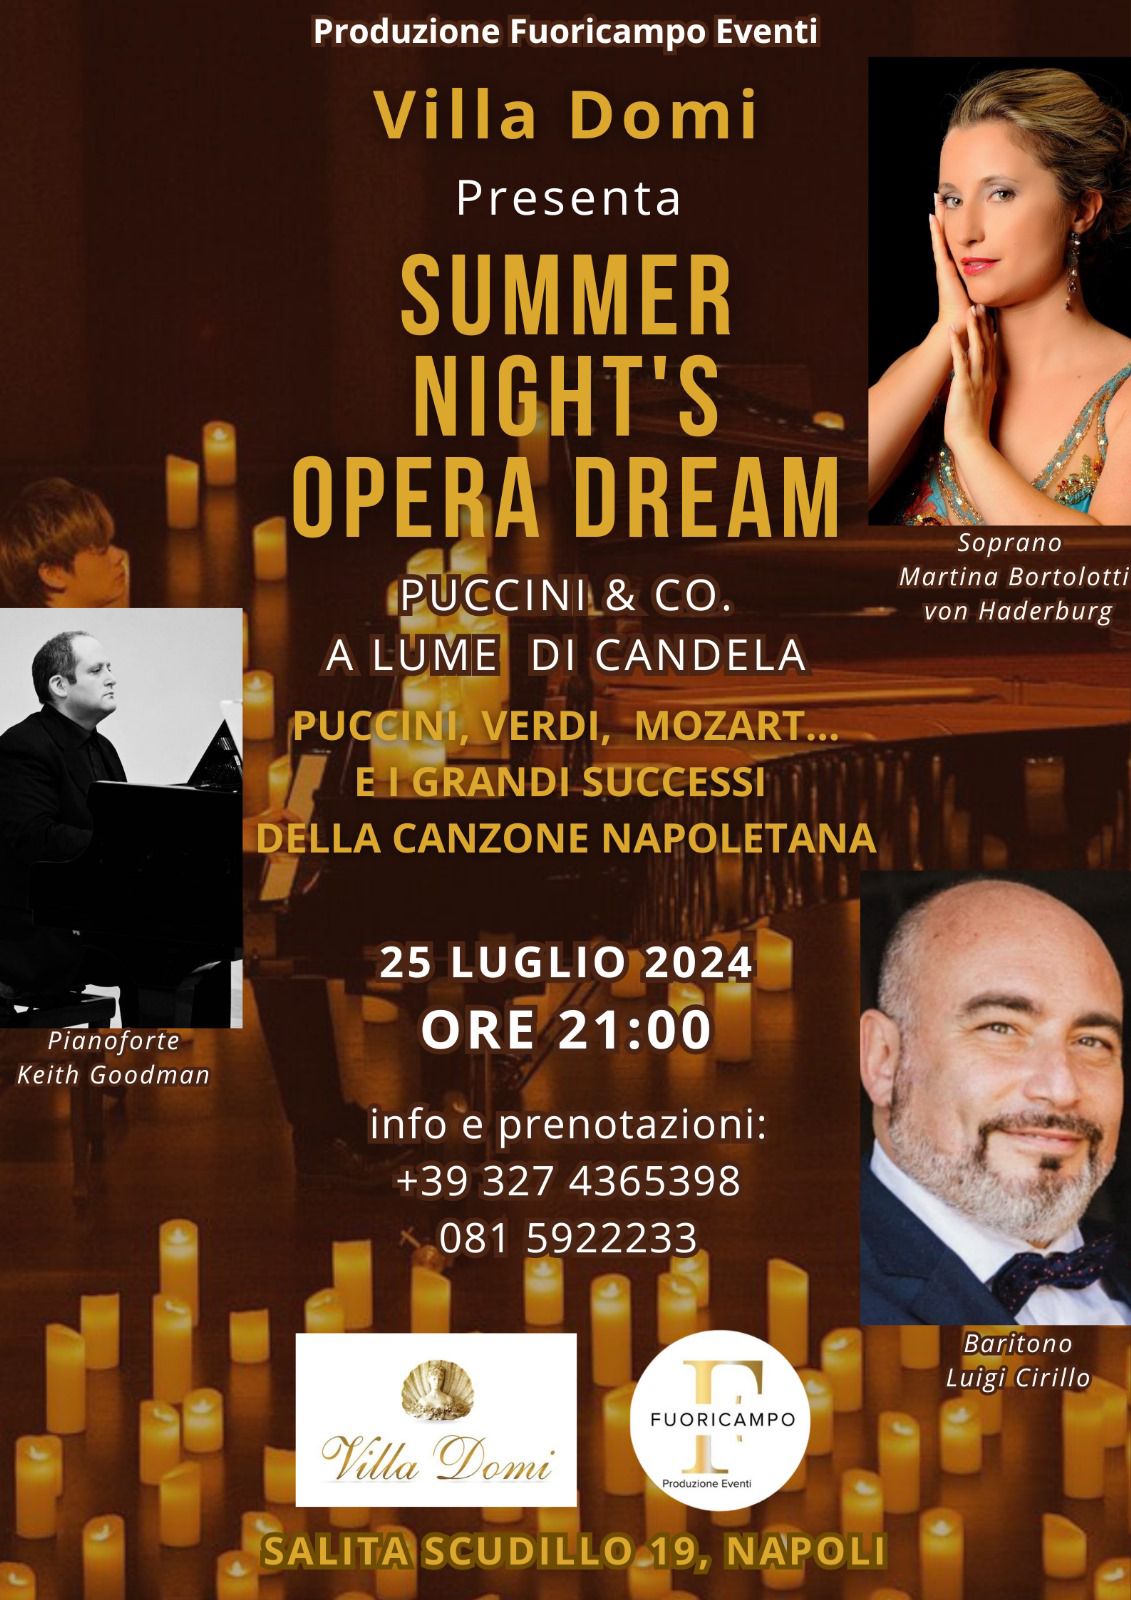 Gran Concerto "SUMMER NIGHT'S OPERA DREAM - Puccini & Co. a lume di candela" che avrà luogo giovedi 25. luglio 2024 alle ore 21.00 presso la dimora storica VILLA DOMI, Salita Scudillo 19, Napoli.